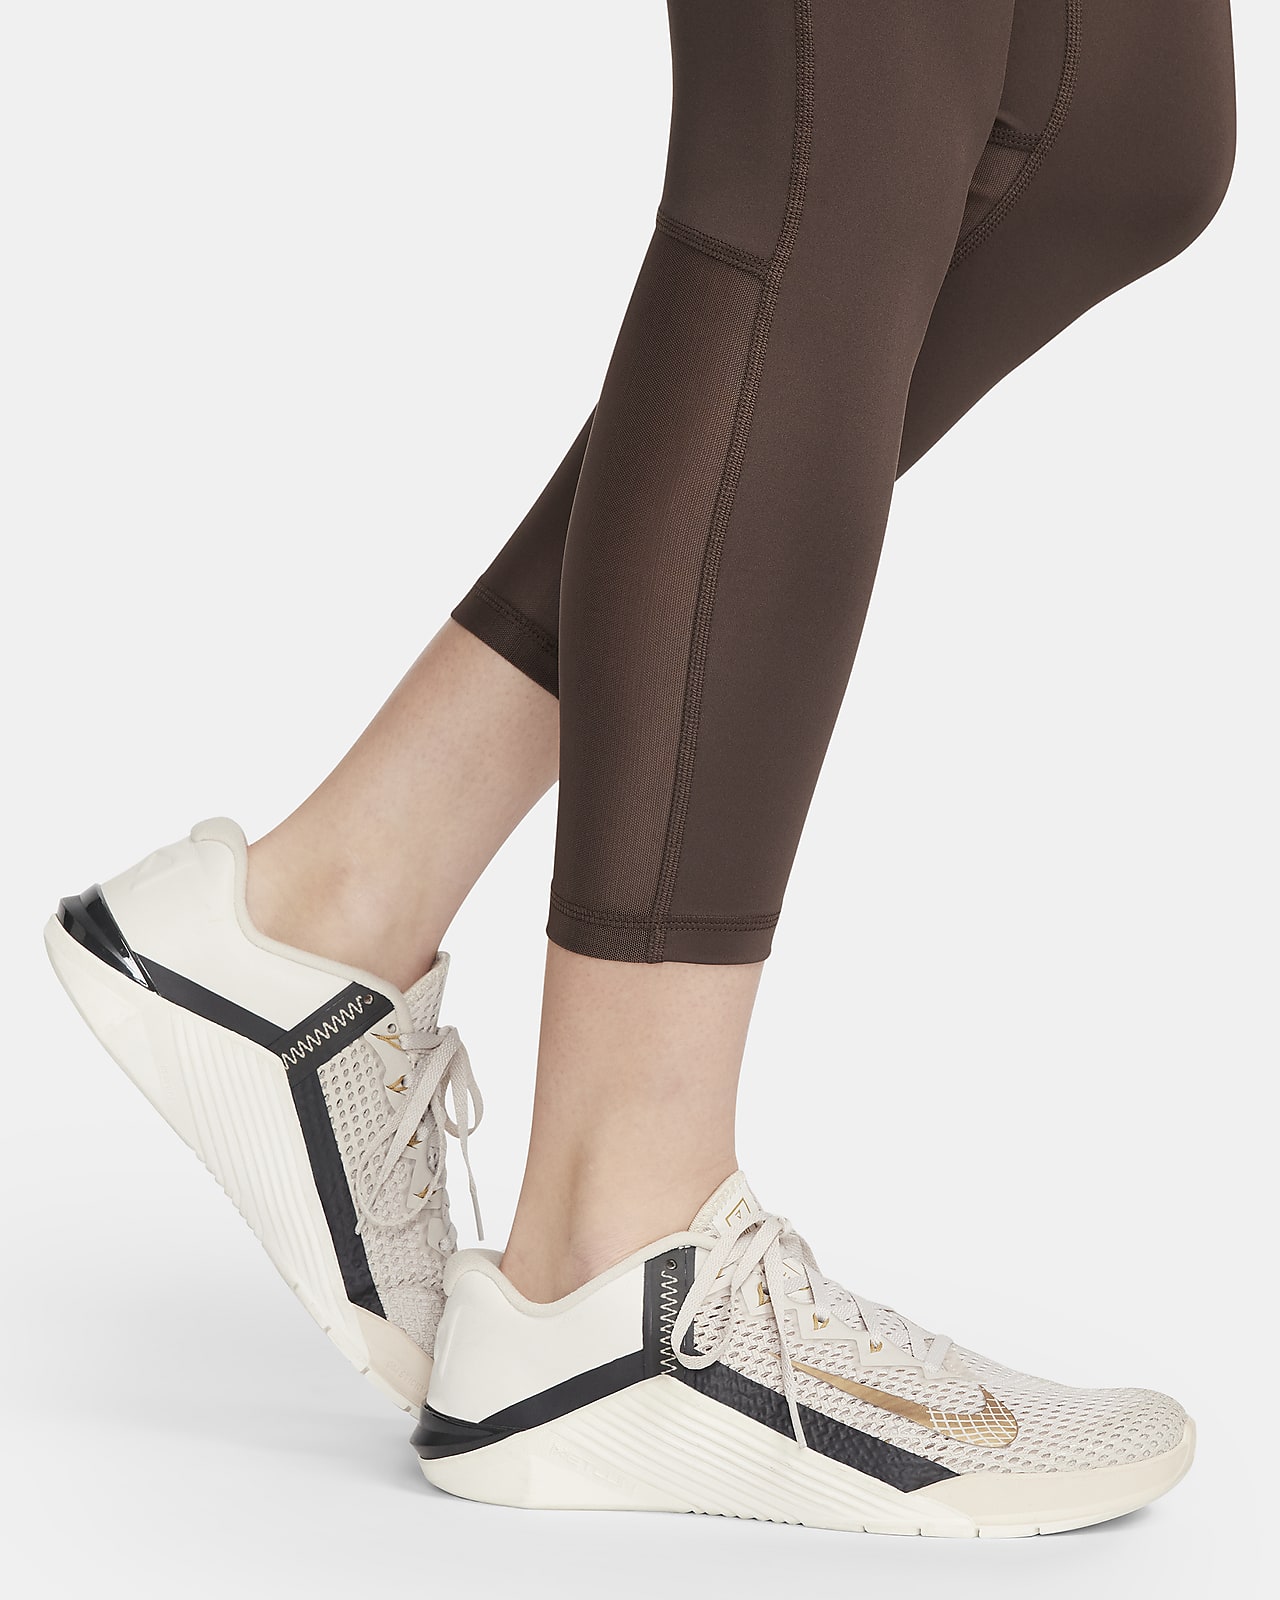 Nike womens leggings Pro 365 : : Fashion